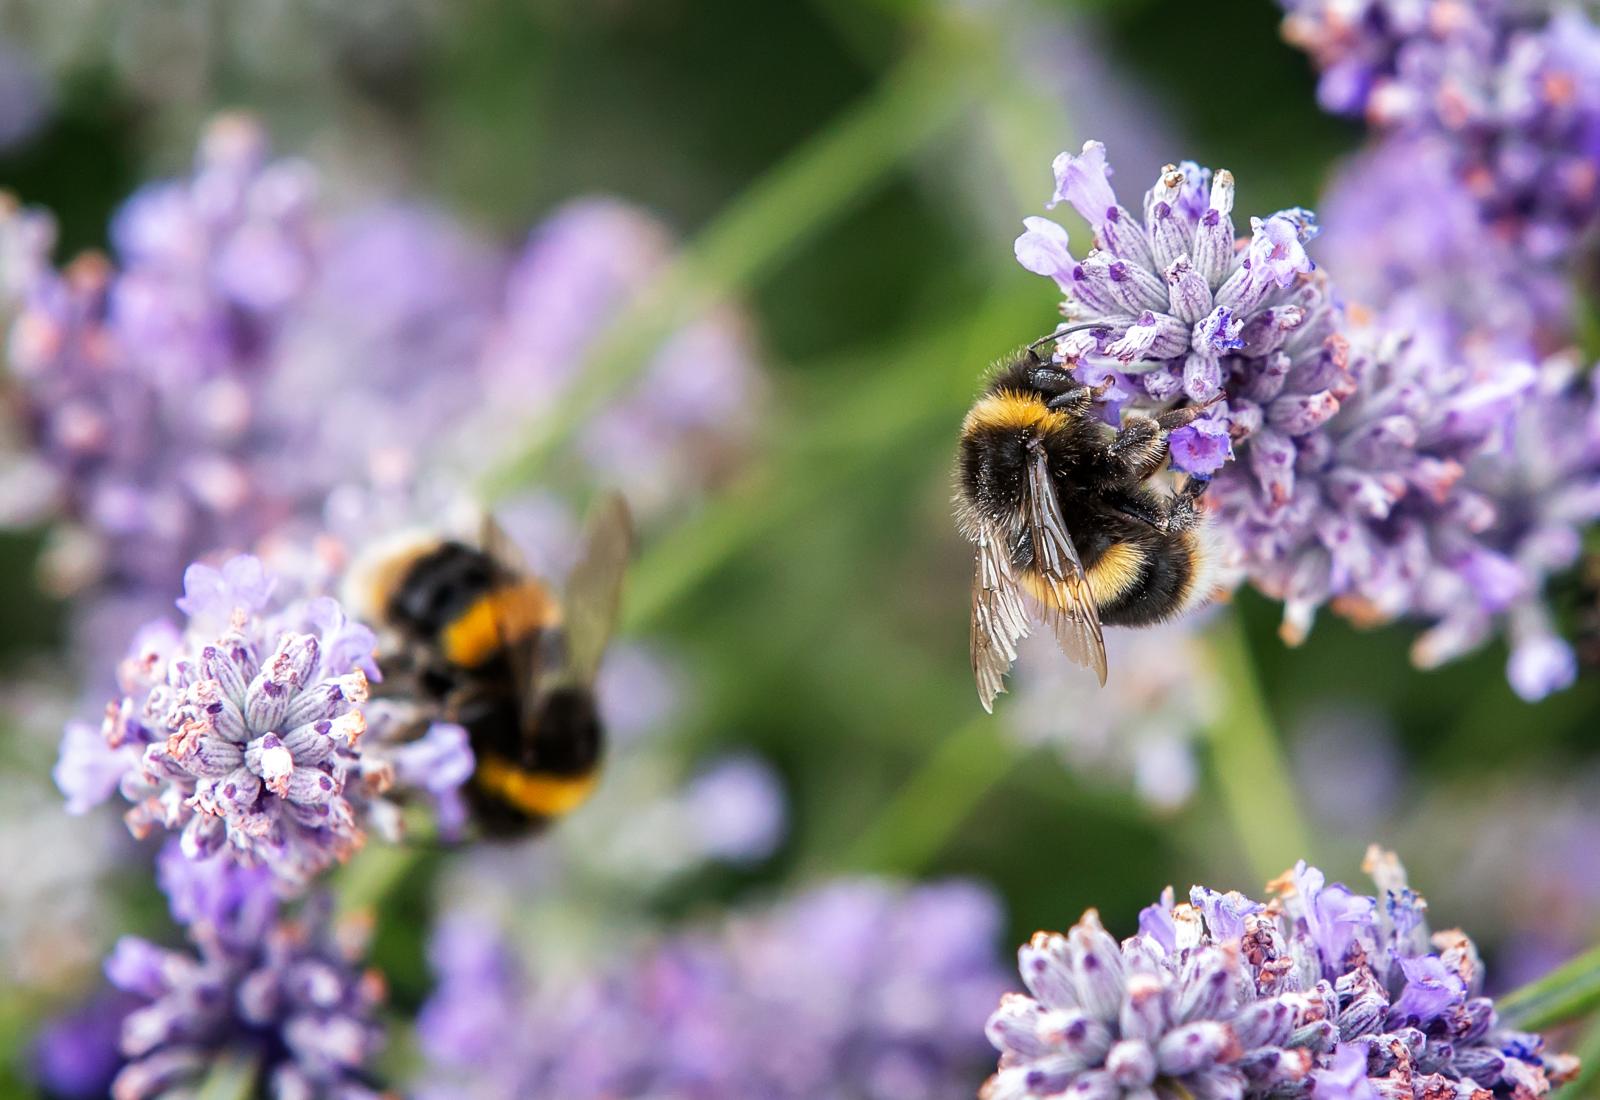 Get Your Garden Buzzing - Create a Bee-Friendly Garden This Spring!